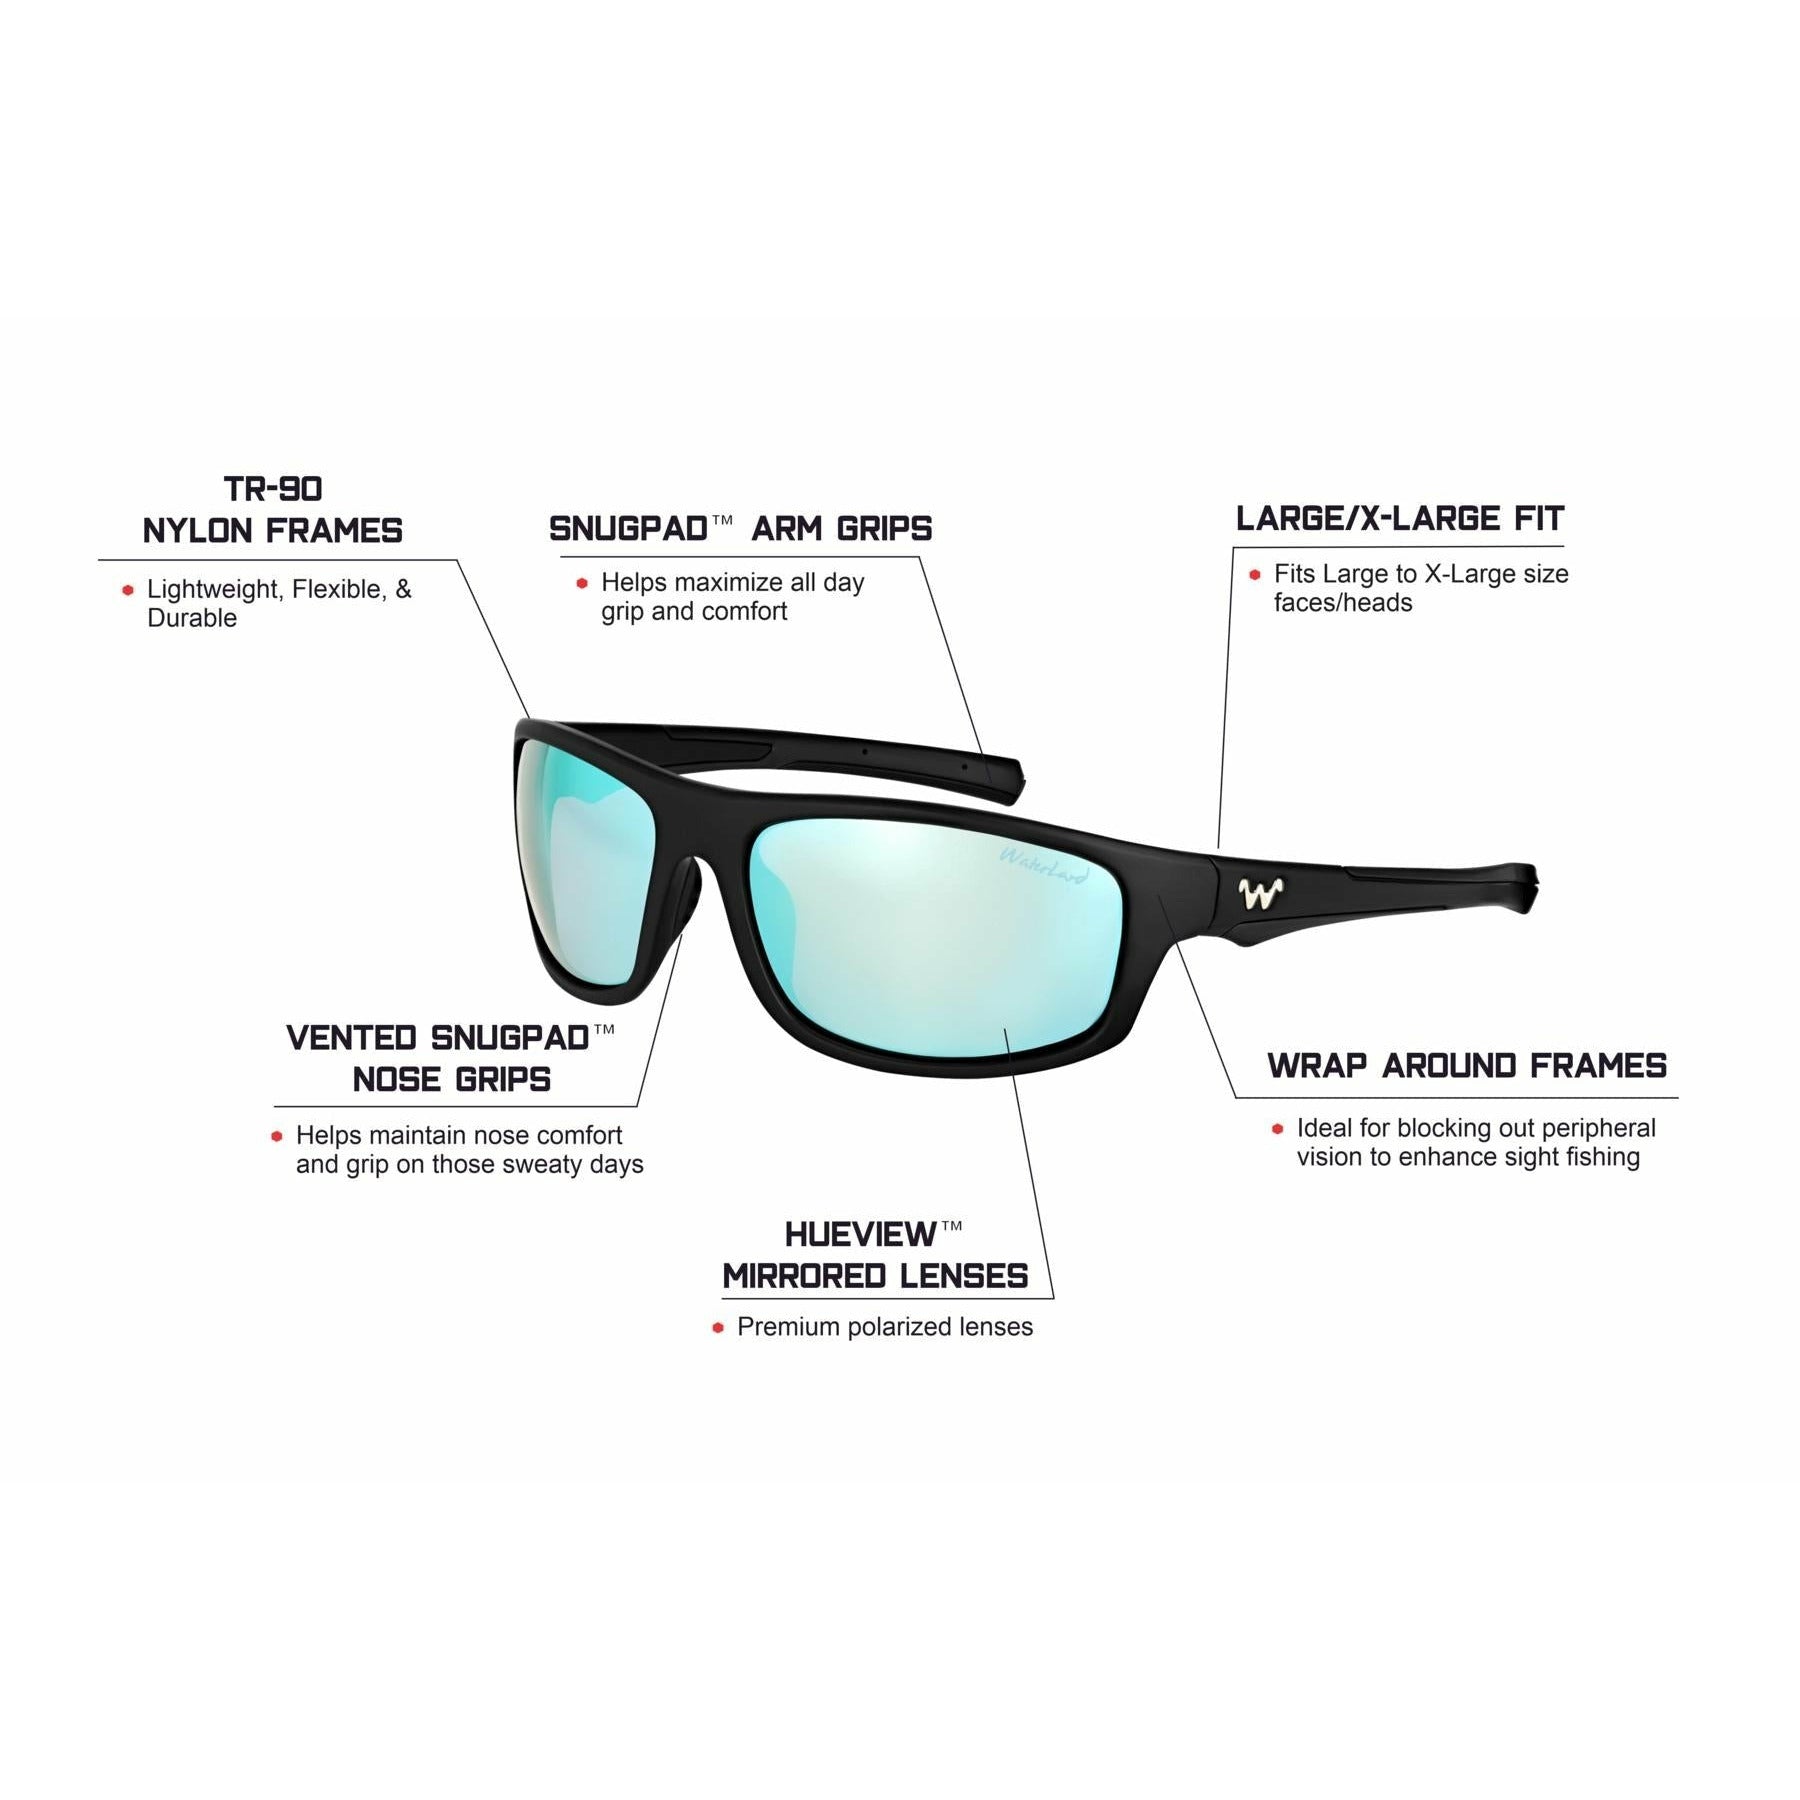 WaterLand Fishing Sunglasses - BedFishers Series 